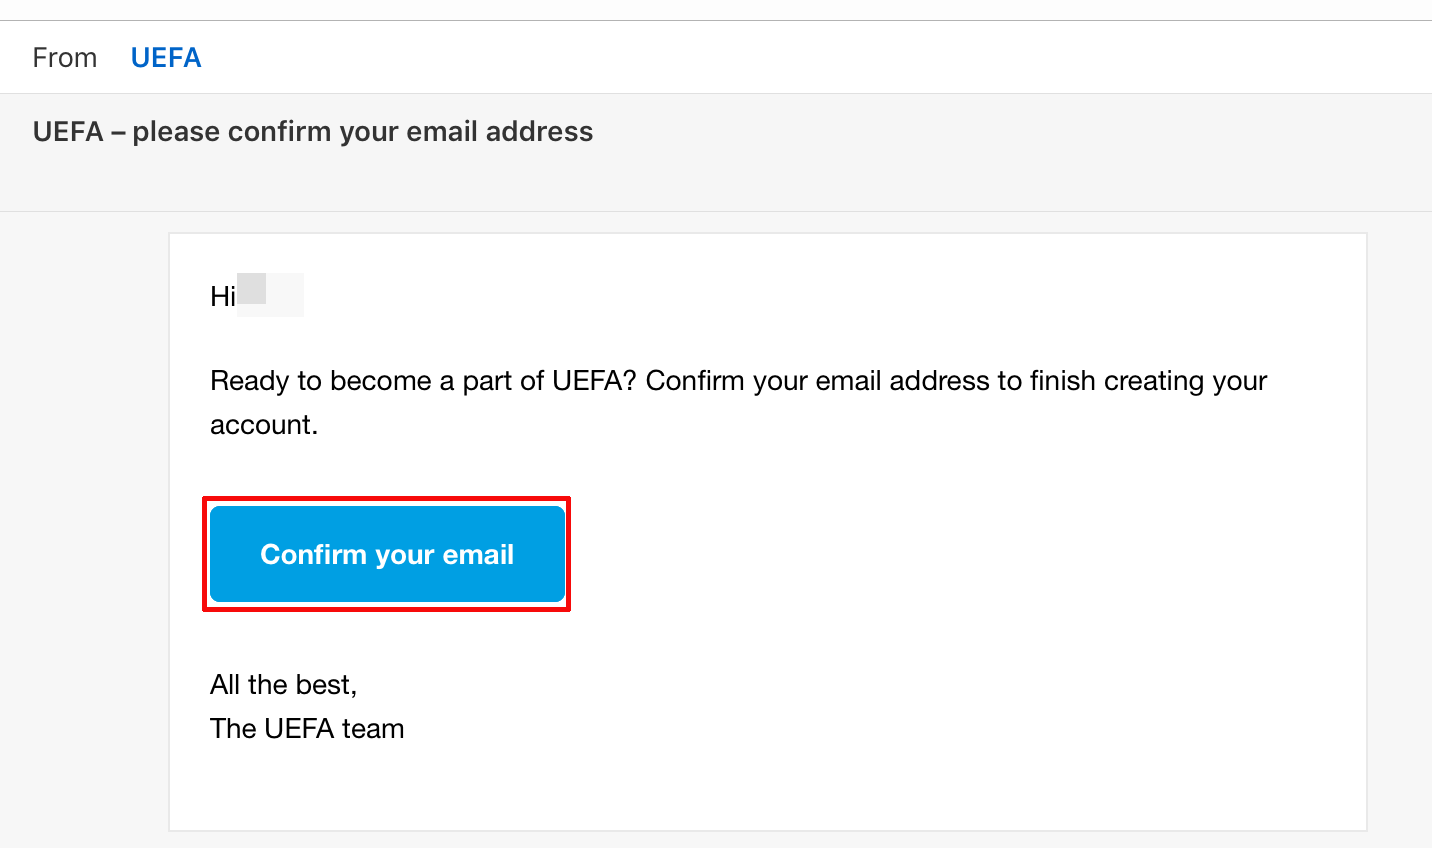 登録したメールアドレスに届いたメールを開いてその中にある【Confirm your email】をタップします。